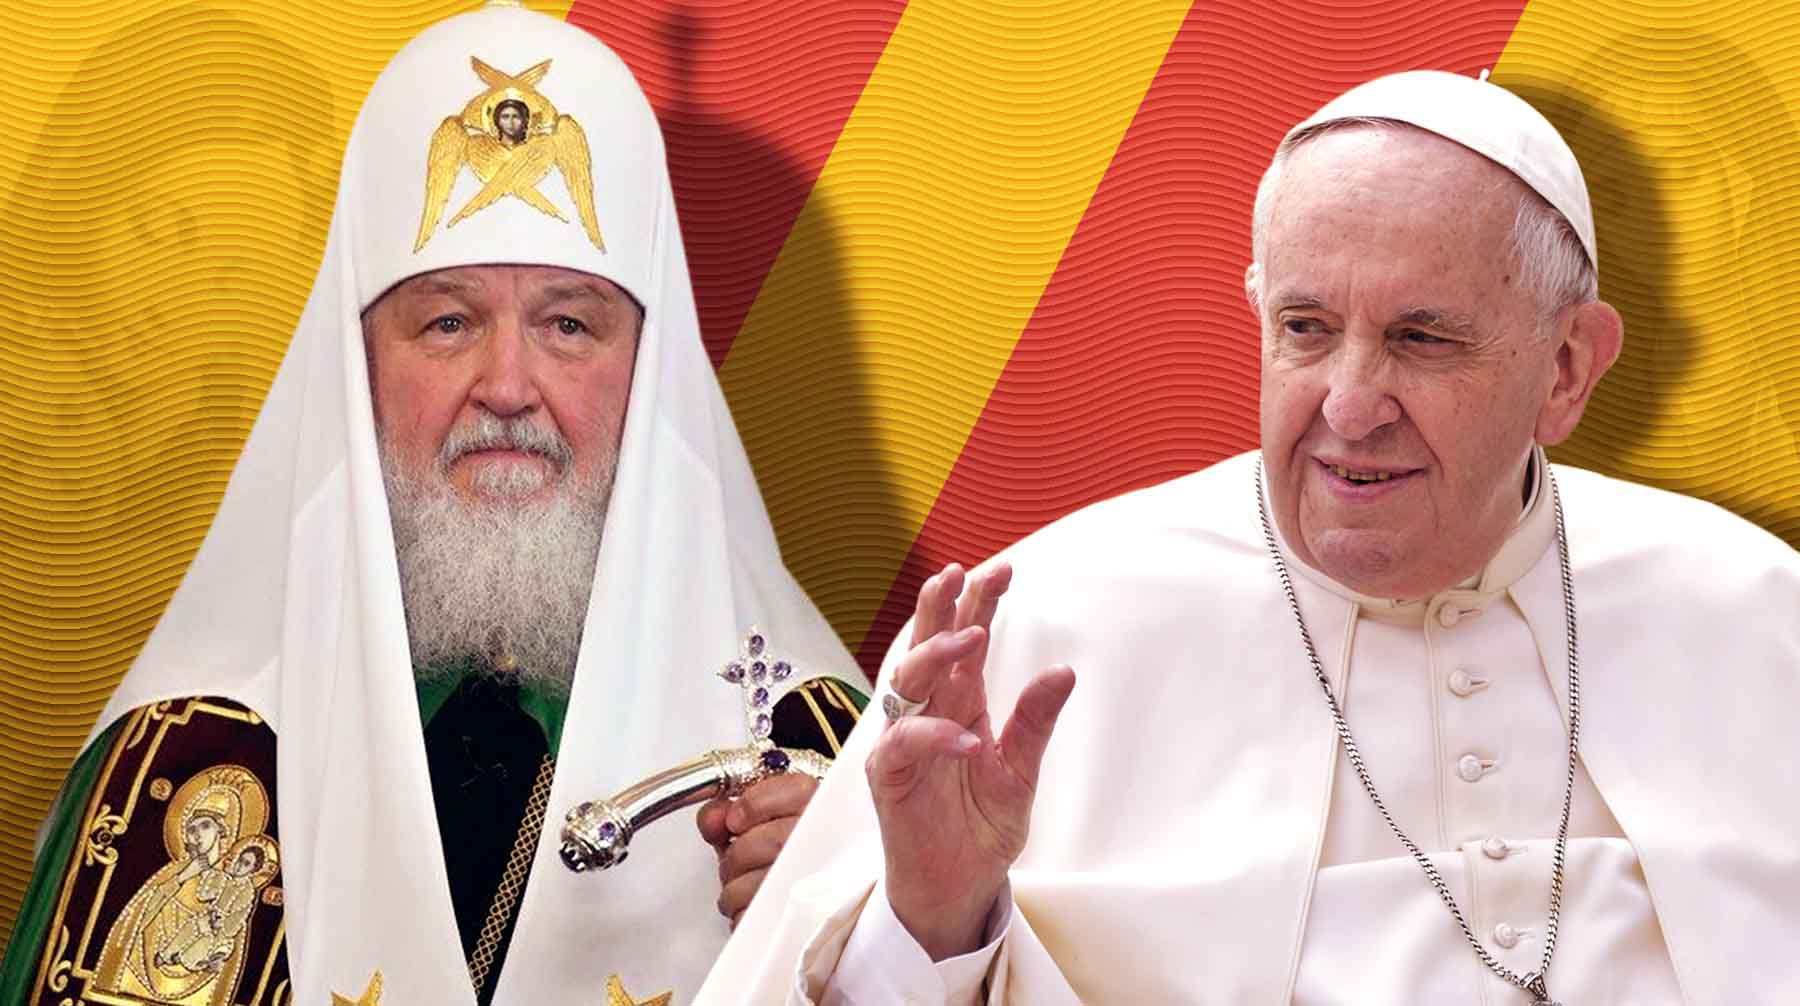 Dailystorm - Богослов Осипов: Папа римский Франциск — иезуит и сказал о лае НАТО, чтобы подмаслить русских